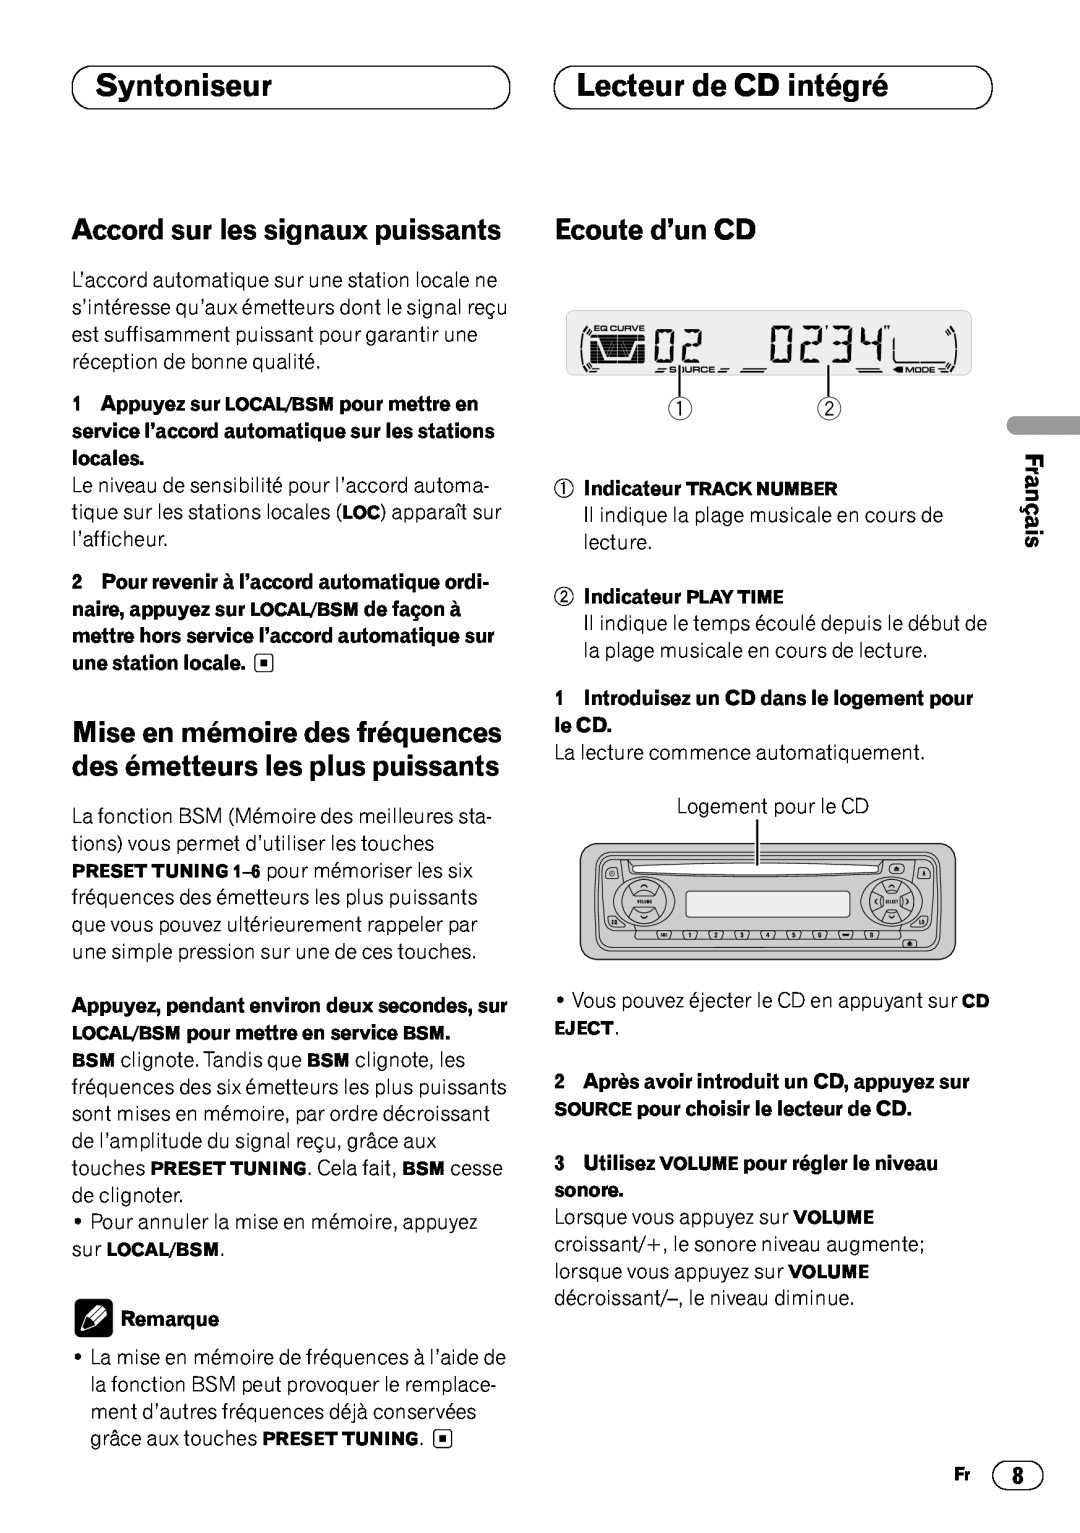 Pioneer DEH-1400 Lecteur de CD intégré, Accord sur les signaux puissants, Ecoute d’un CD, English, Français, Syntoniseur 